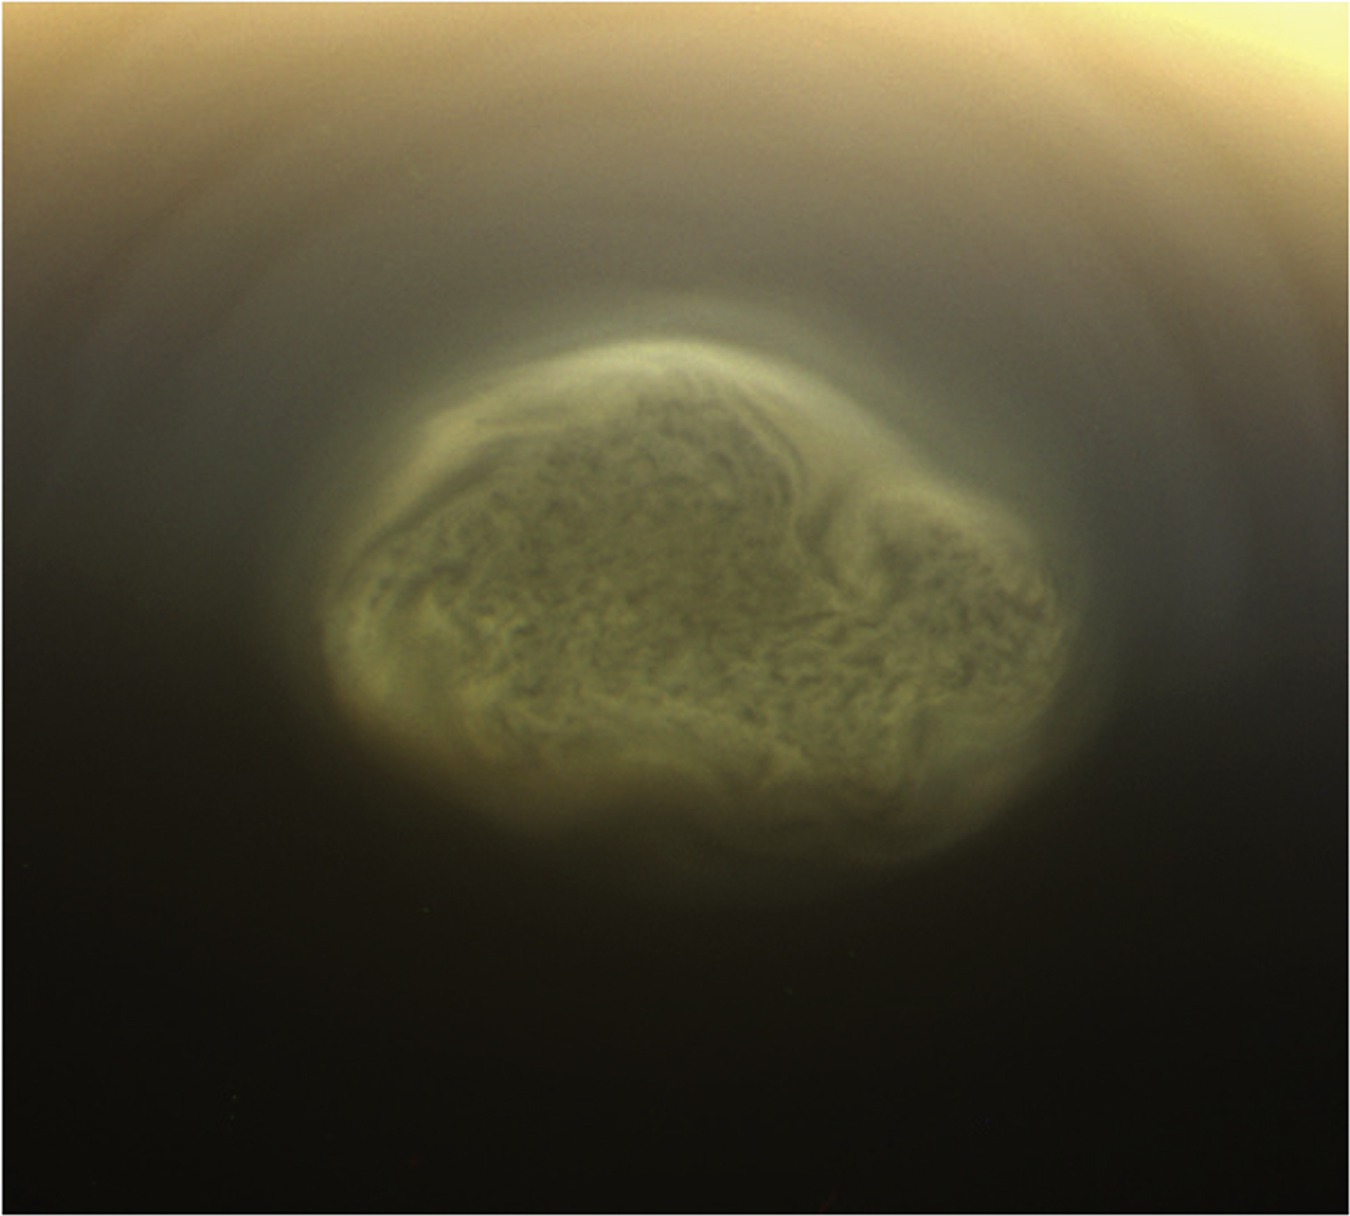 卡西尼号于2012年拍摄的泰坦南极涡旋云。该云大小达48万公里，可能由氰化氢冰或液体组成。                                          图片鸣谢: NASA/JPL/Space Science Institute.